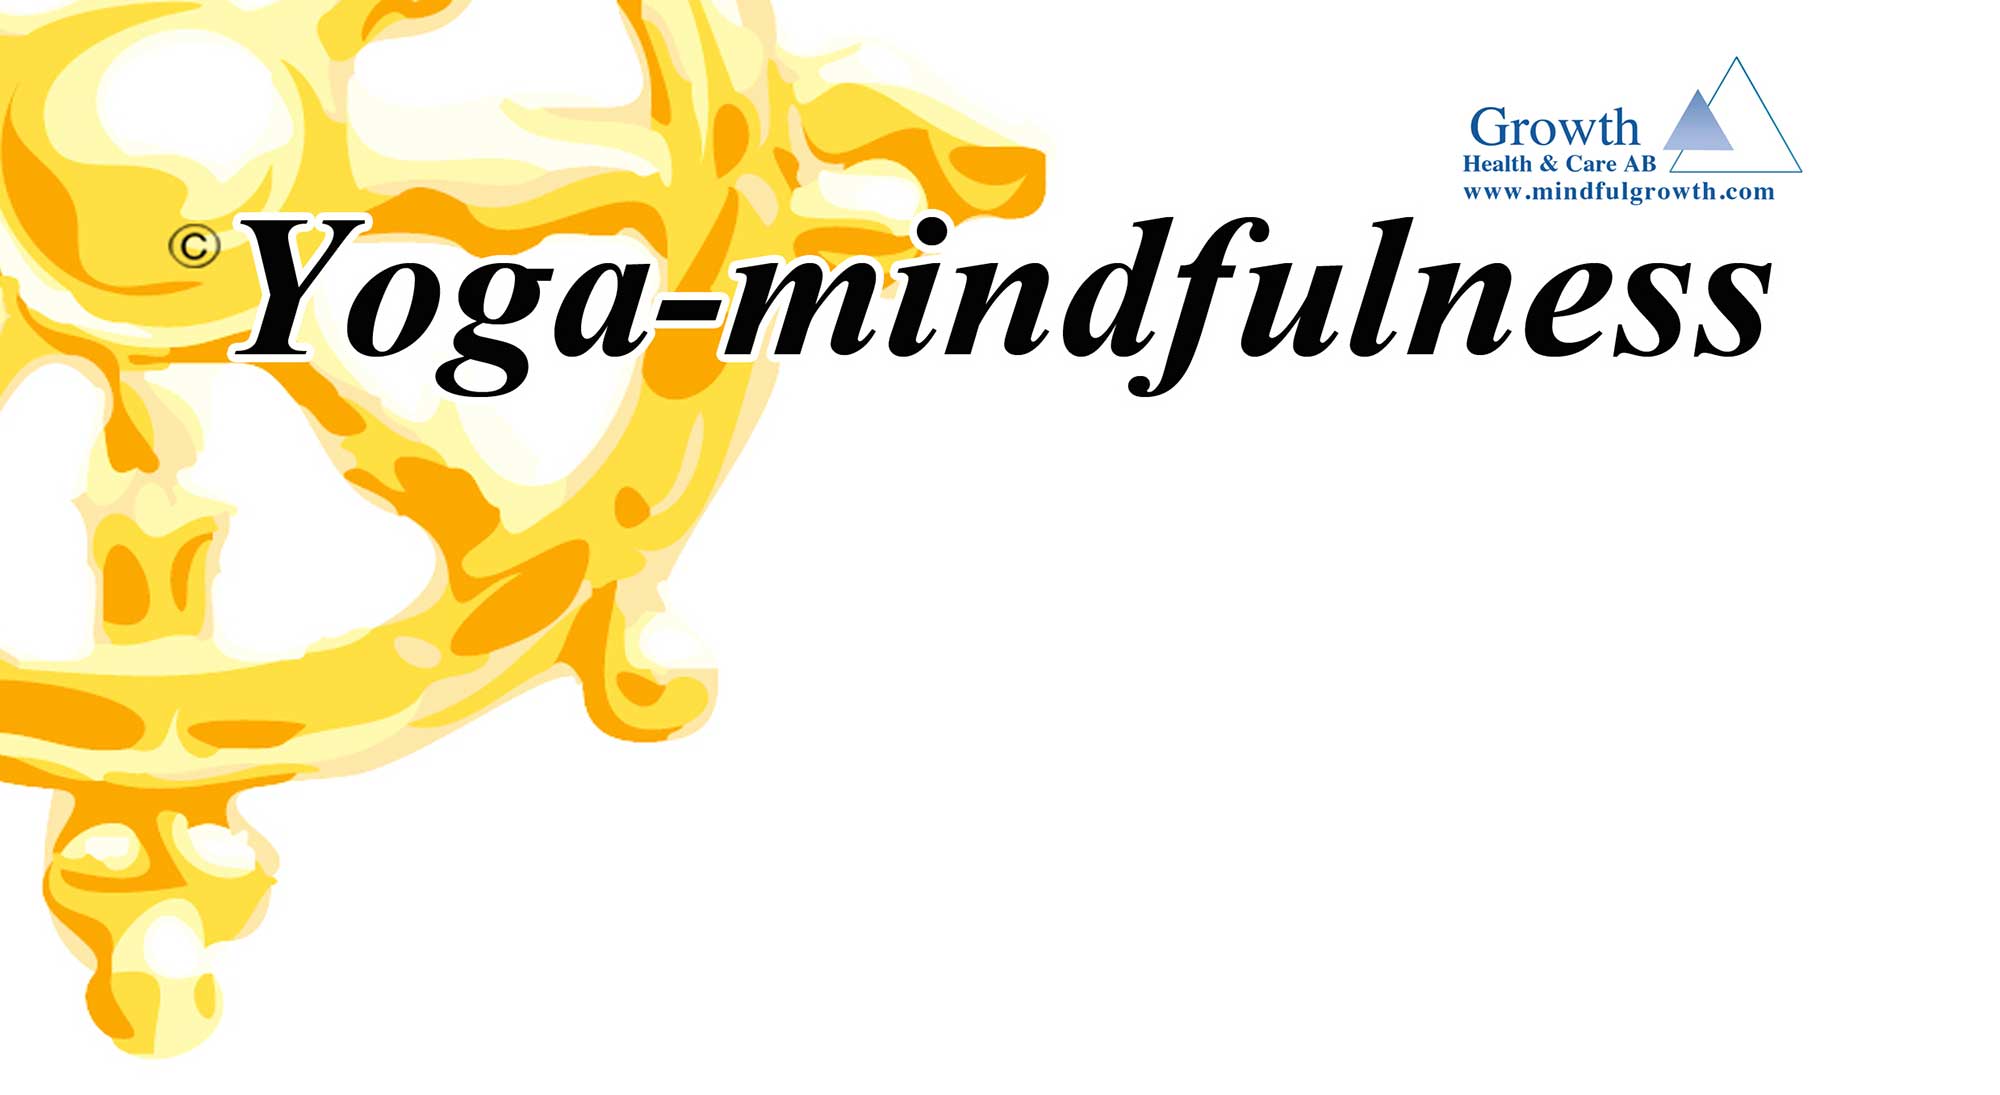 Yoga-mindfulness logo